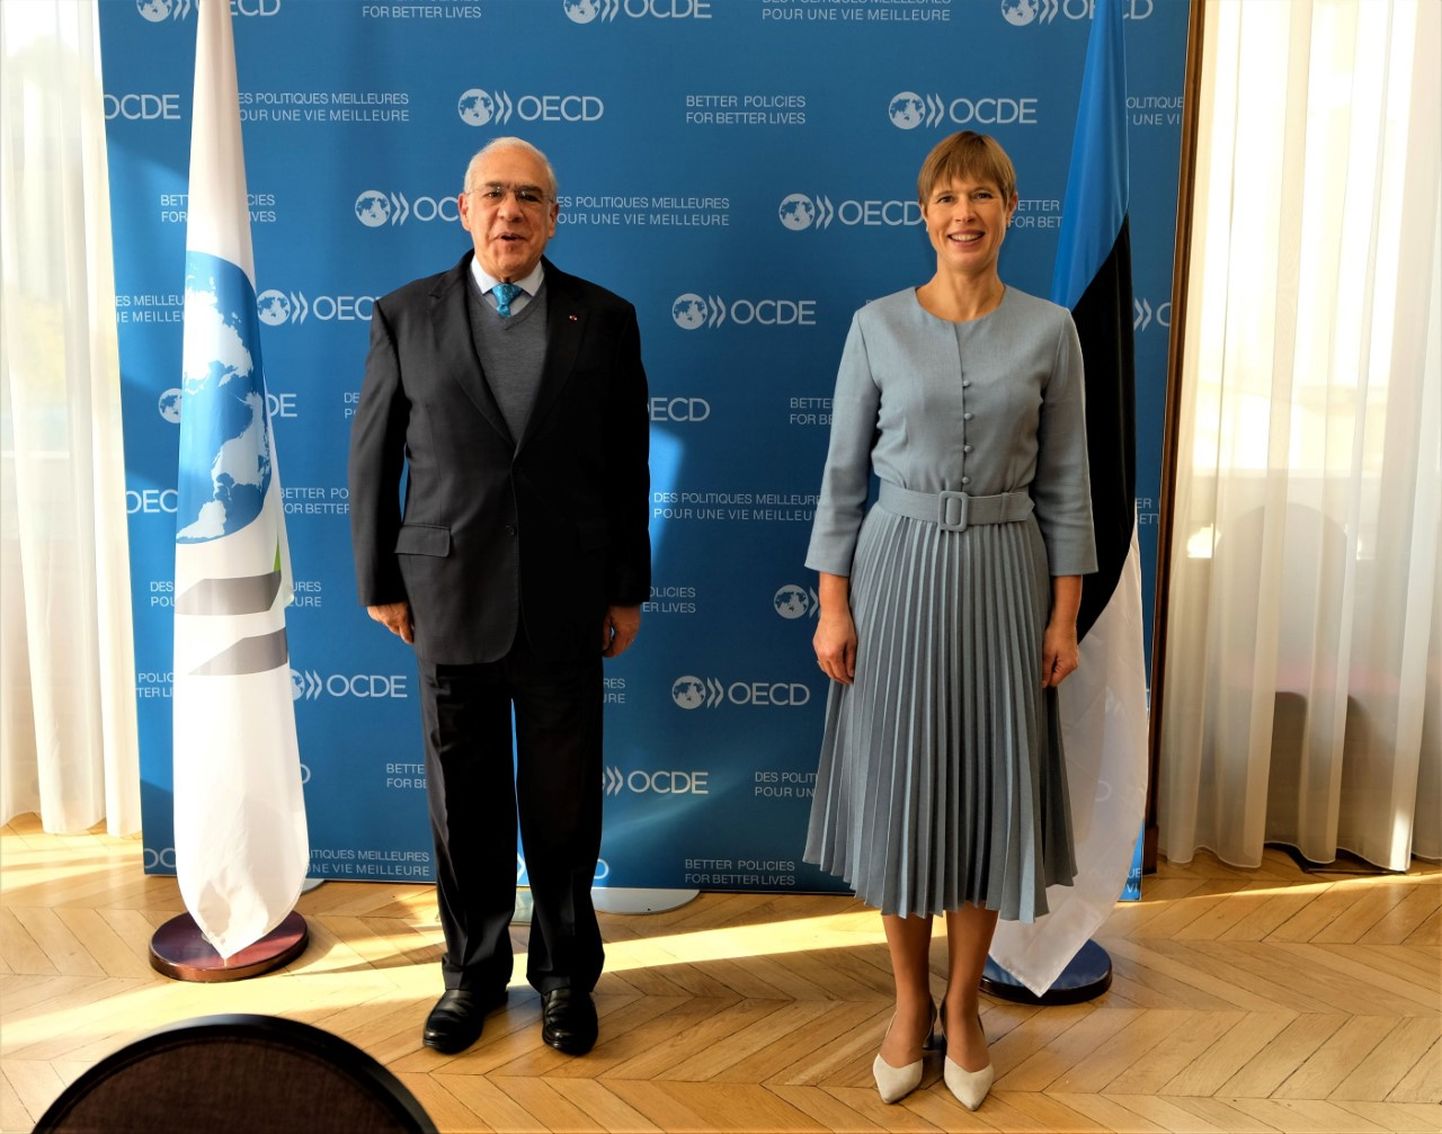 OECD peasekretär Jose Angel Gurria ning Eesti president Kersti Kaljulaid